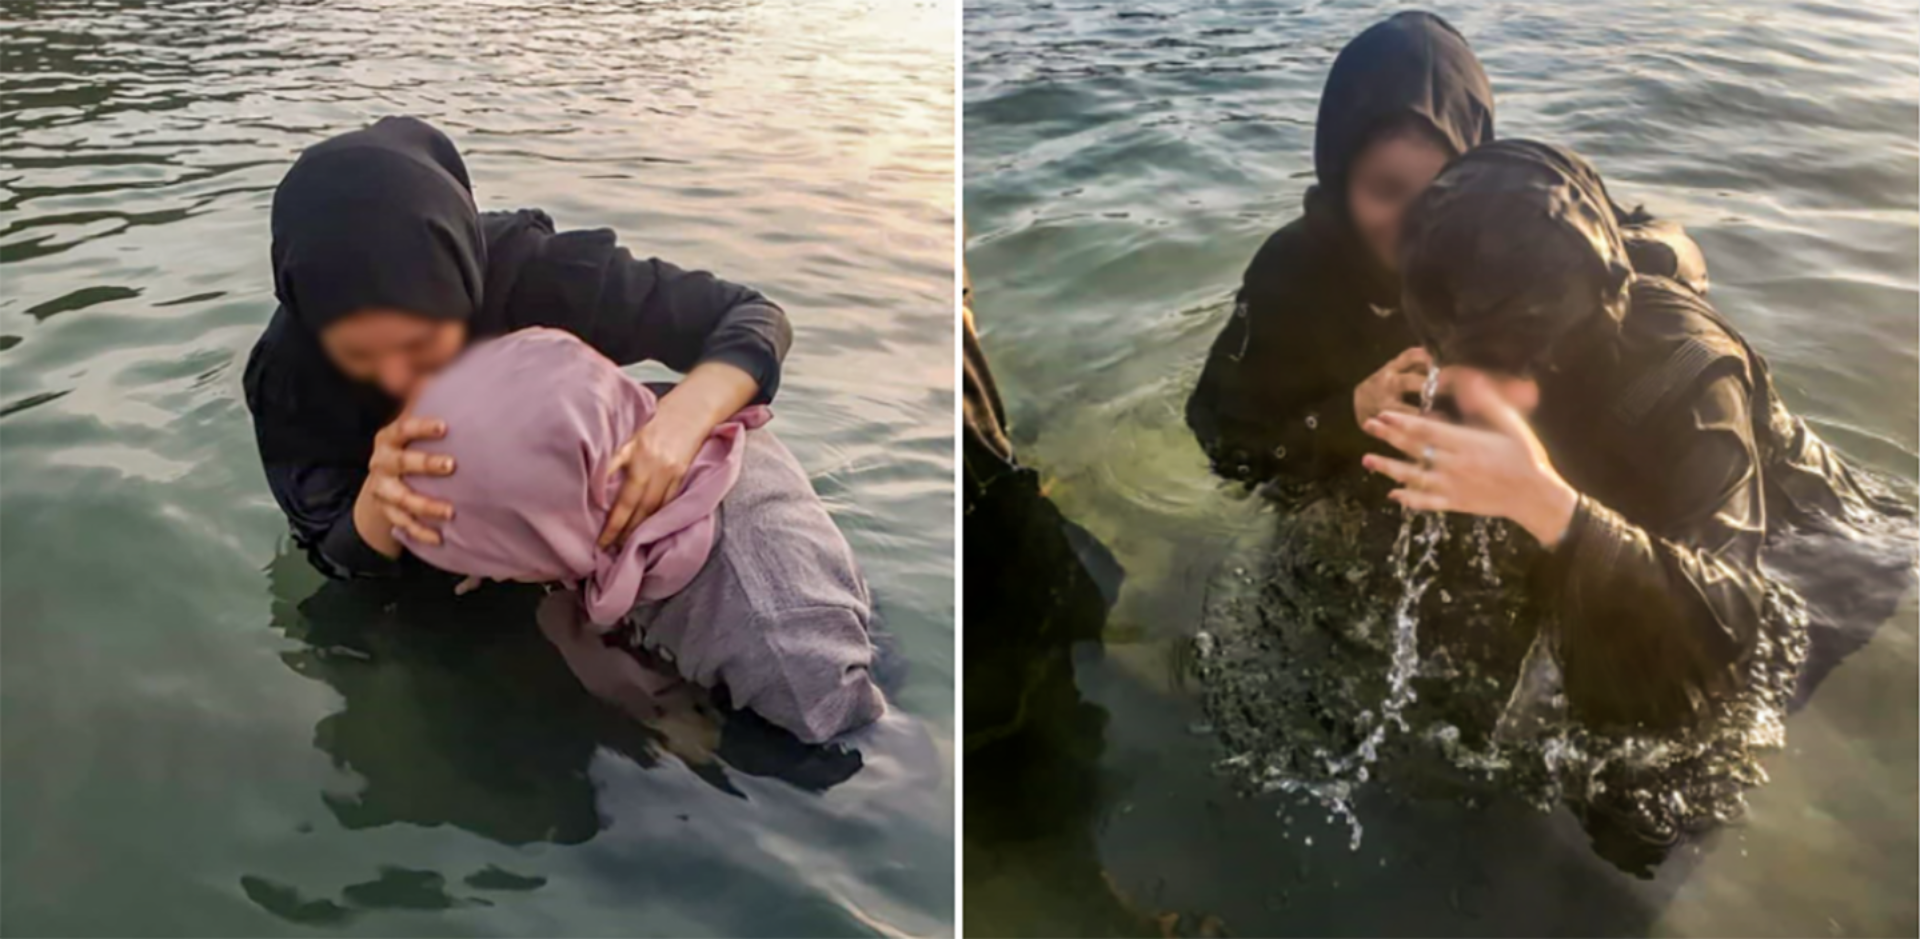 Novos convertidos arriscam a vida para se batizarem escondidos em 60 países perseguidos